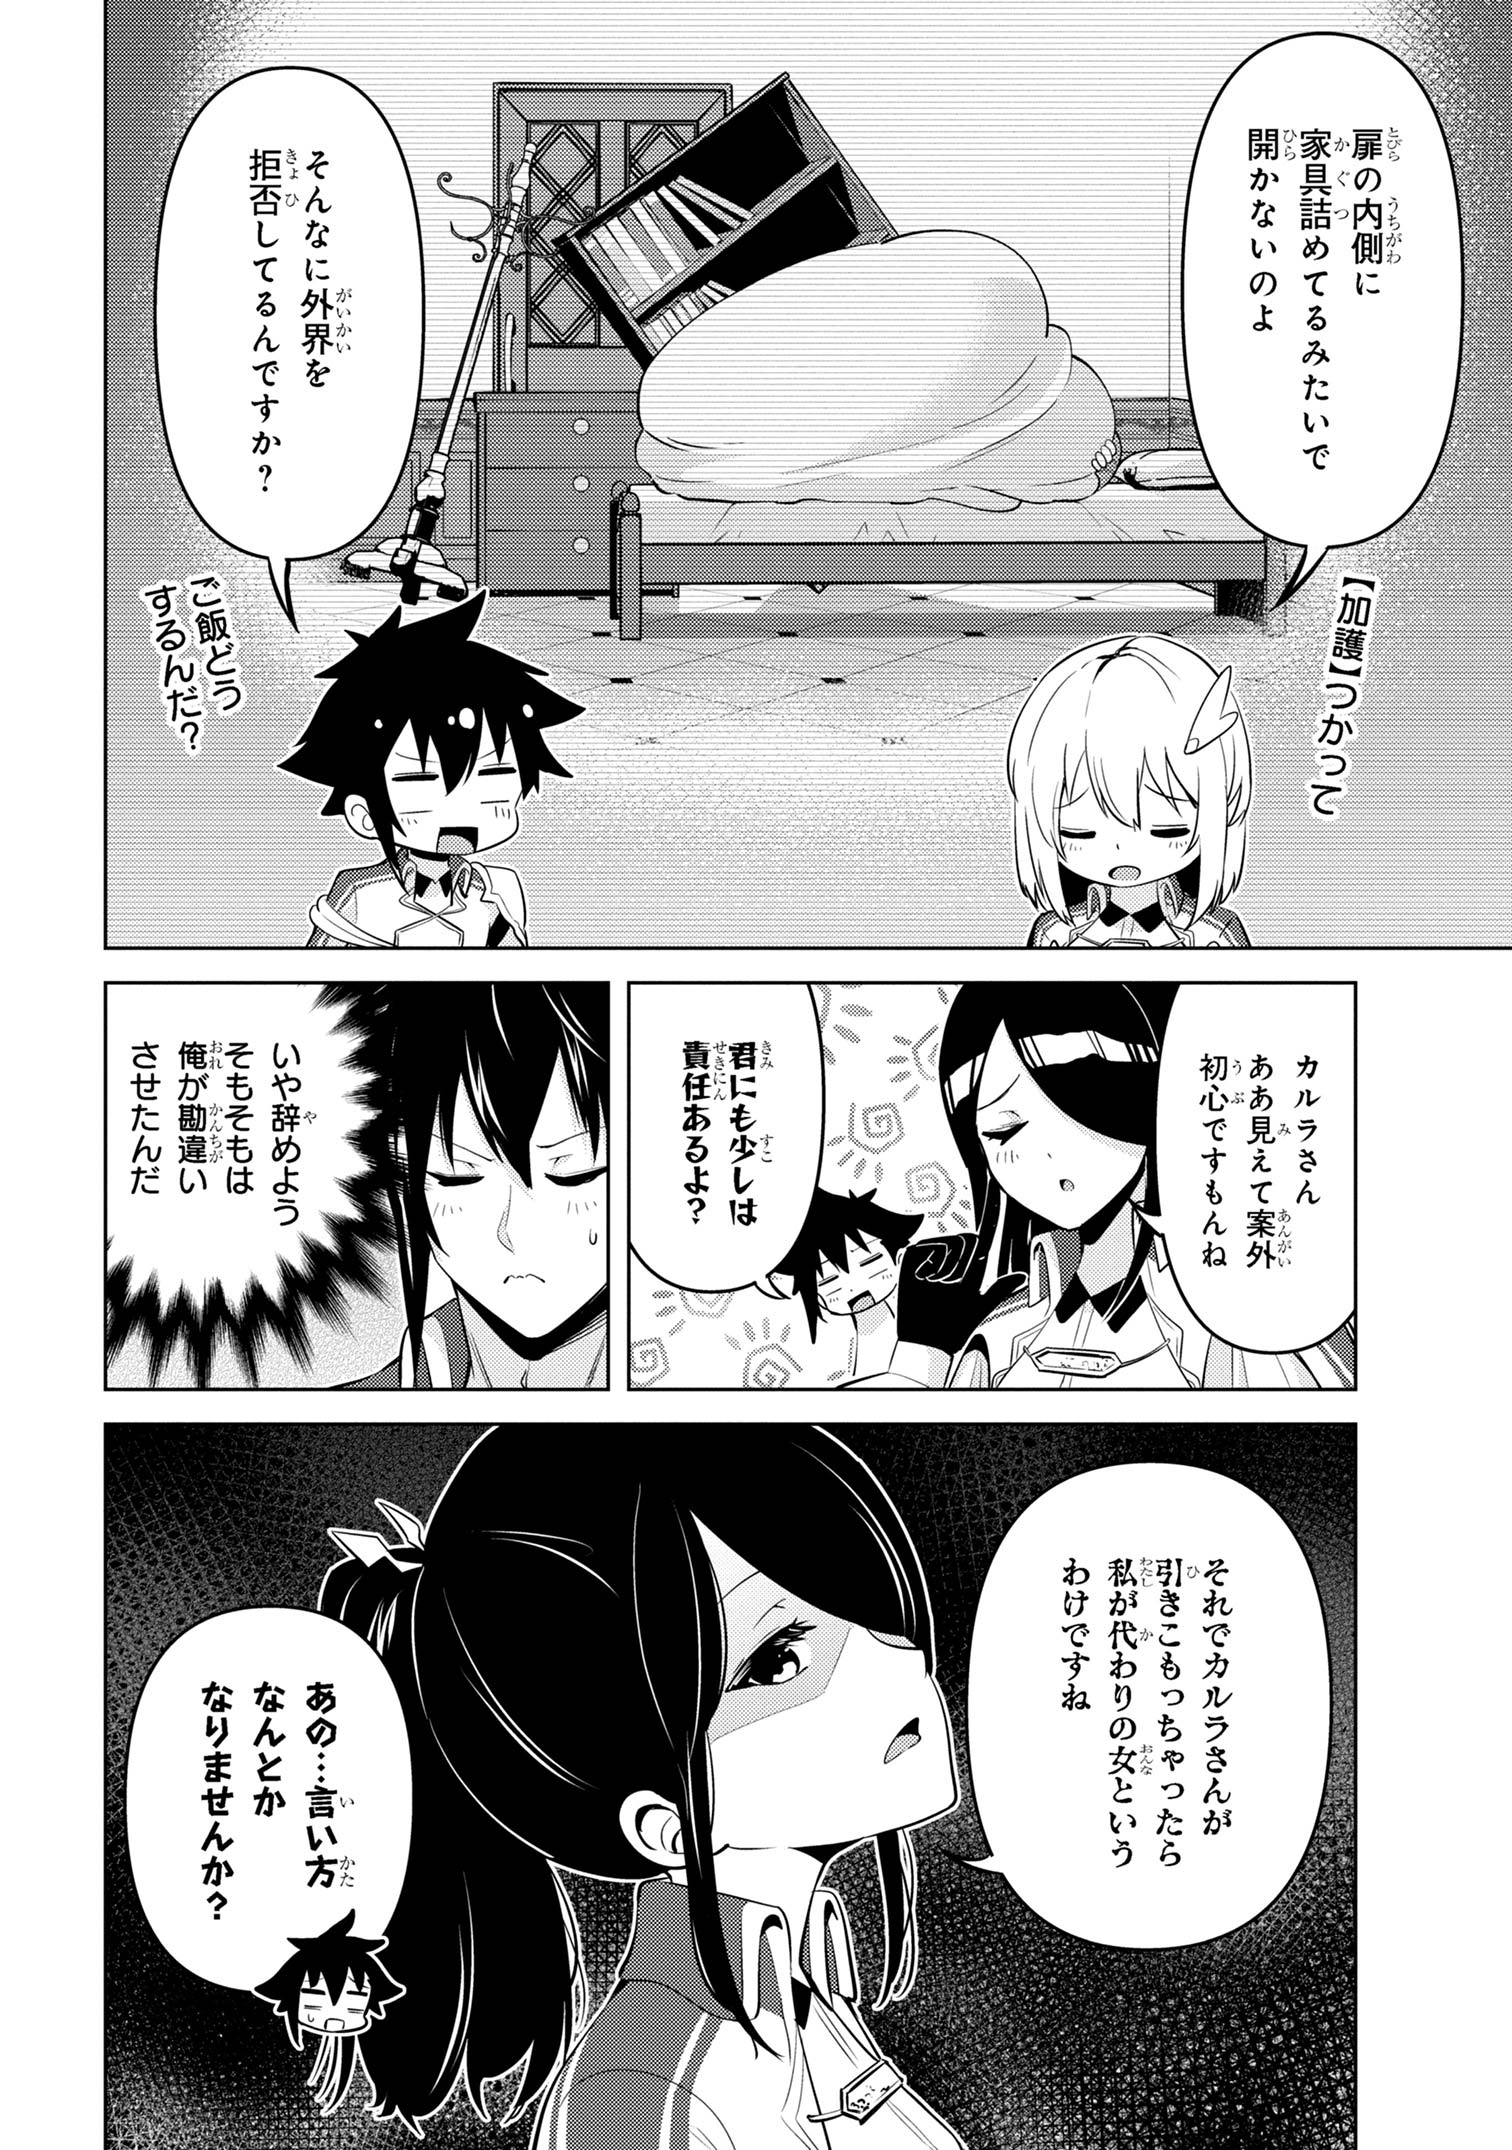 Sekishi ni Natta kedo Danchou no Oppai ga Sugosugite Kokoro ga Kiyomerarenai - Chapter 33 - Page 2